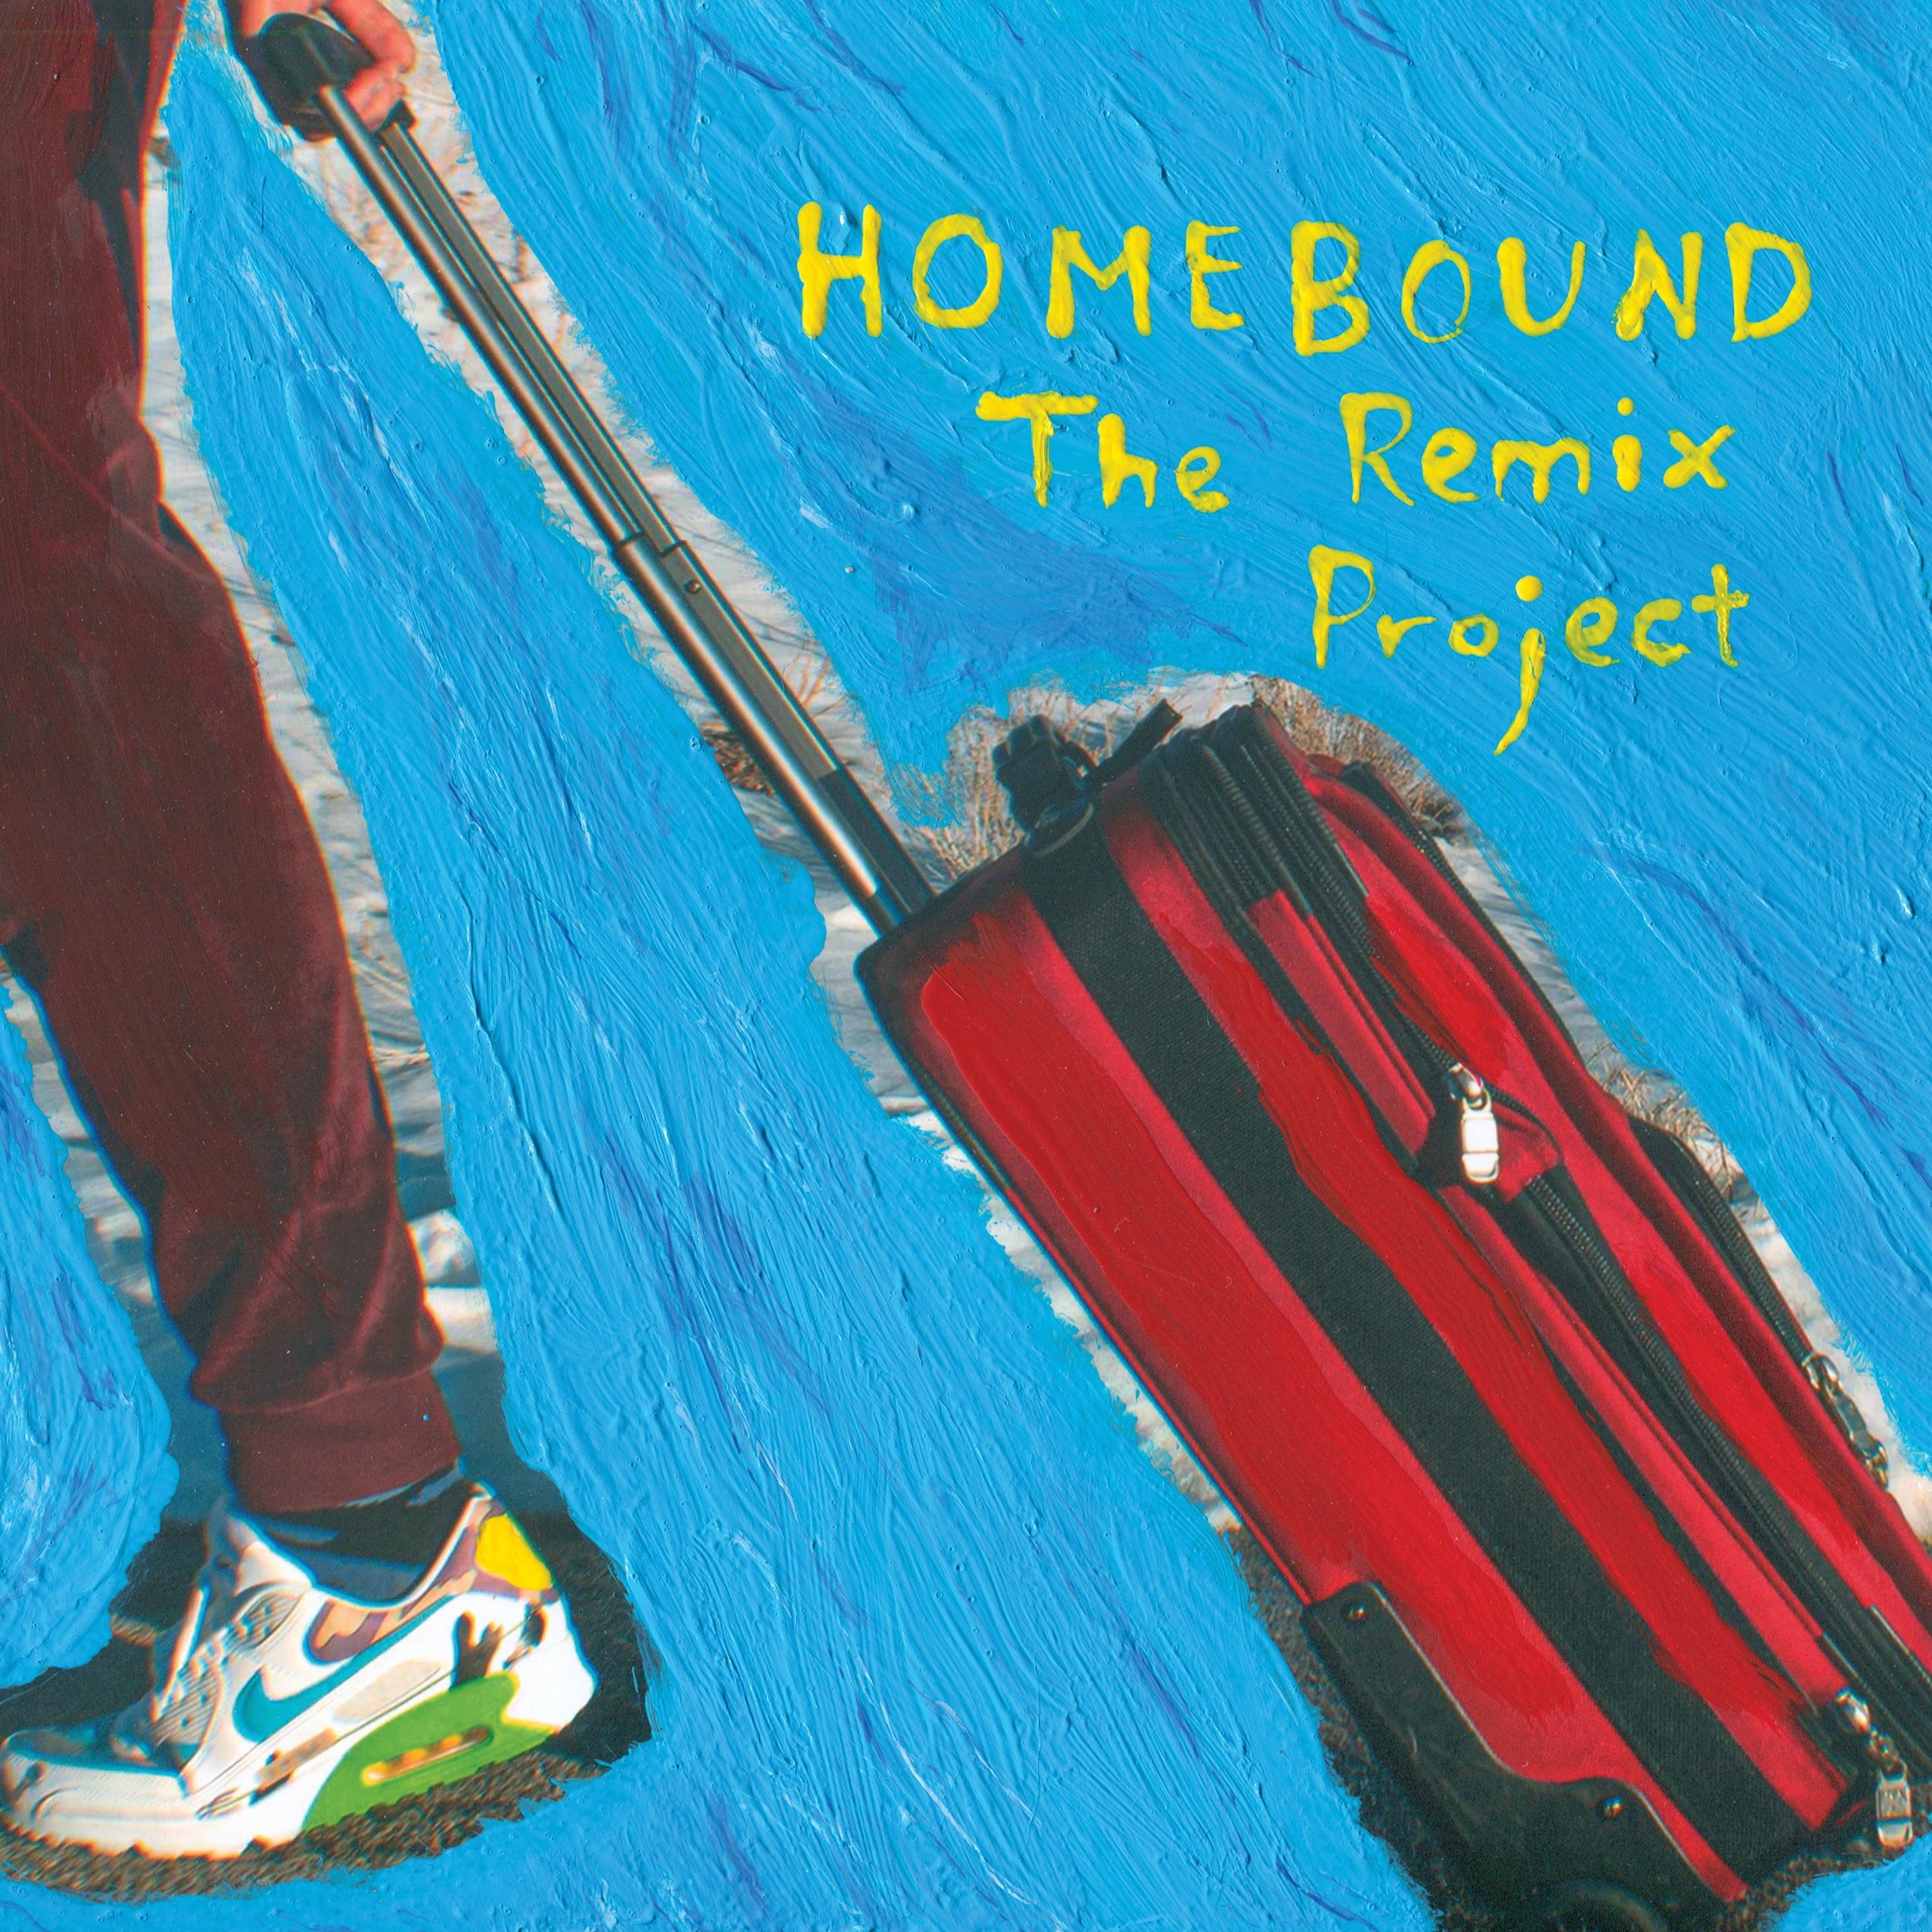 Säm Wilder - Homebound: The Remix Project (Remixer of Sunlight)